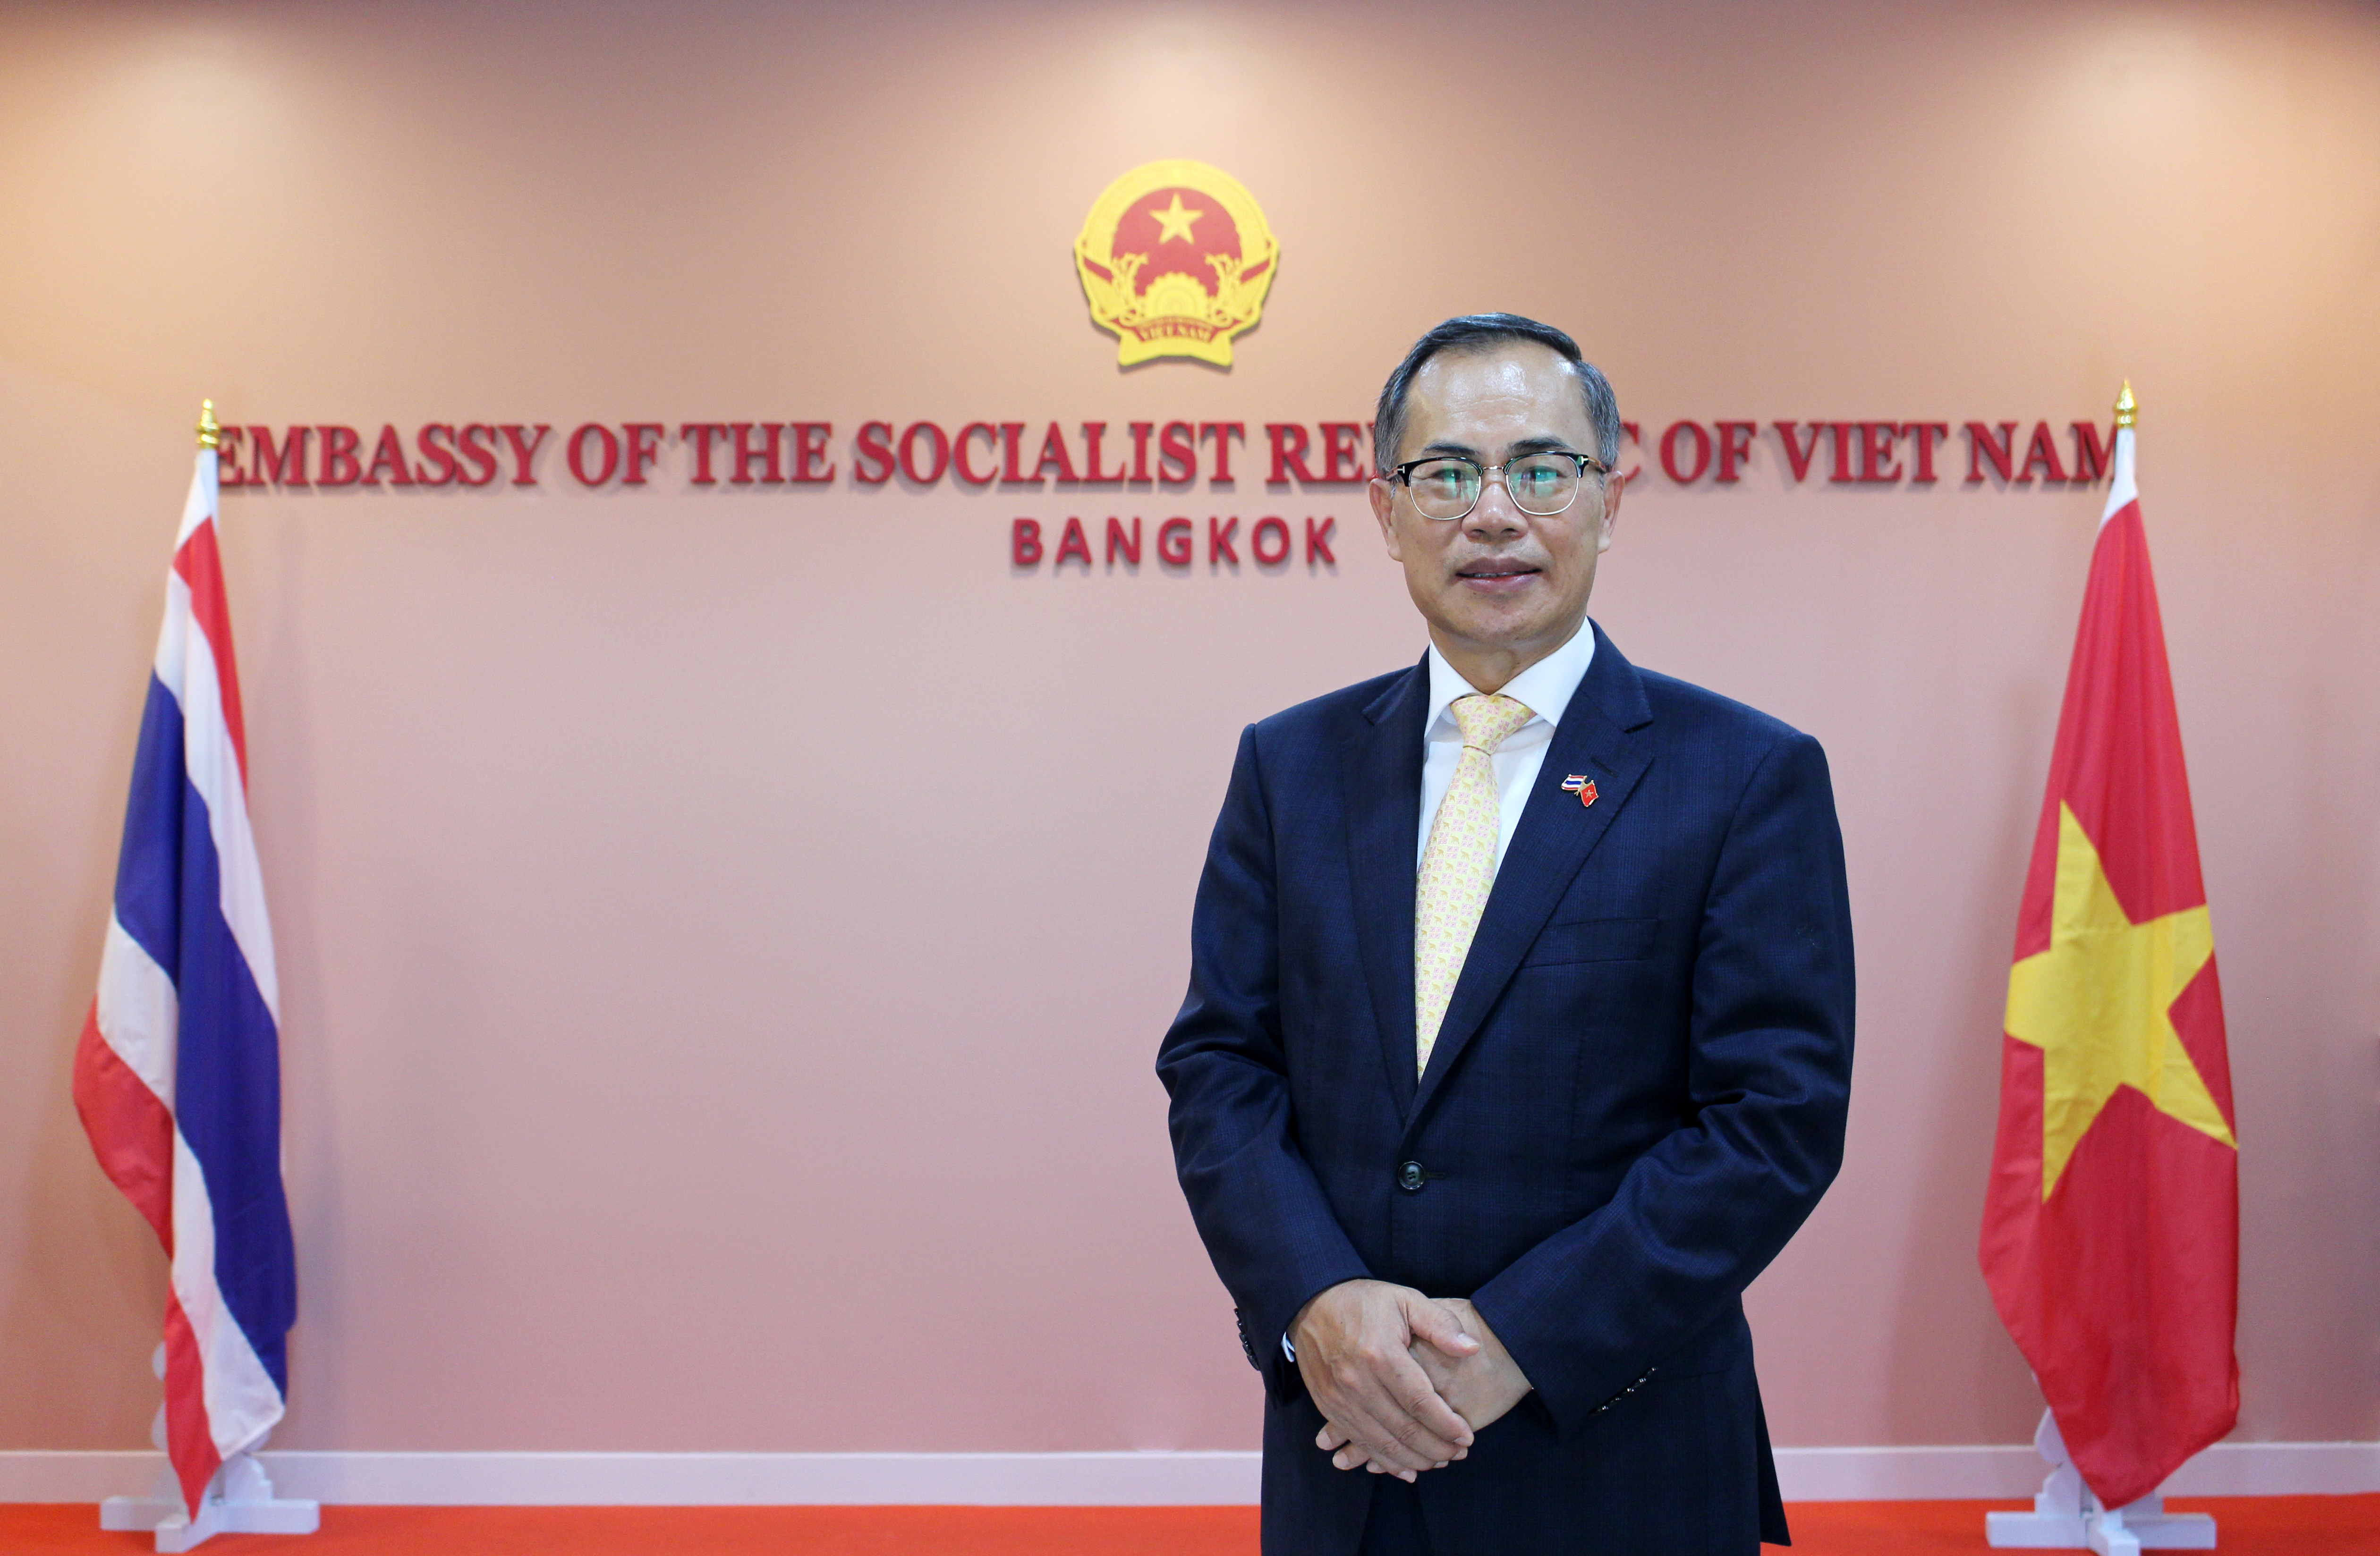 Vietnam Ambassador